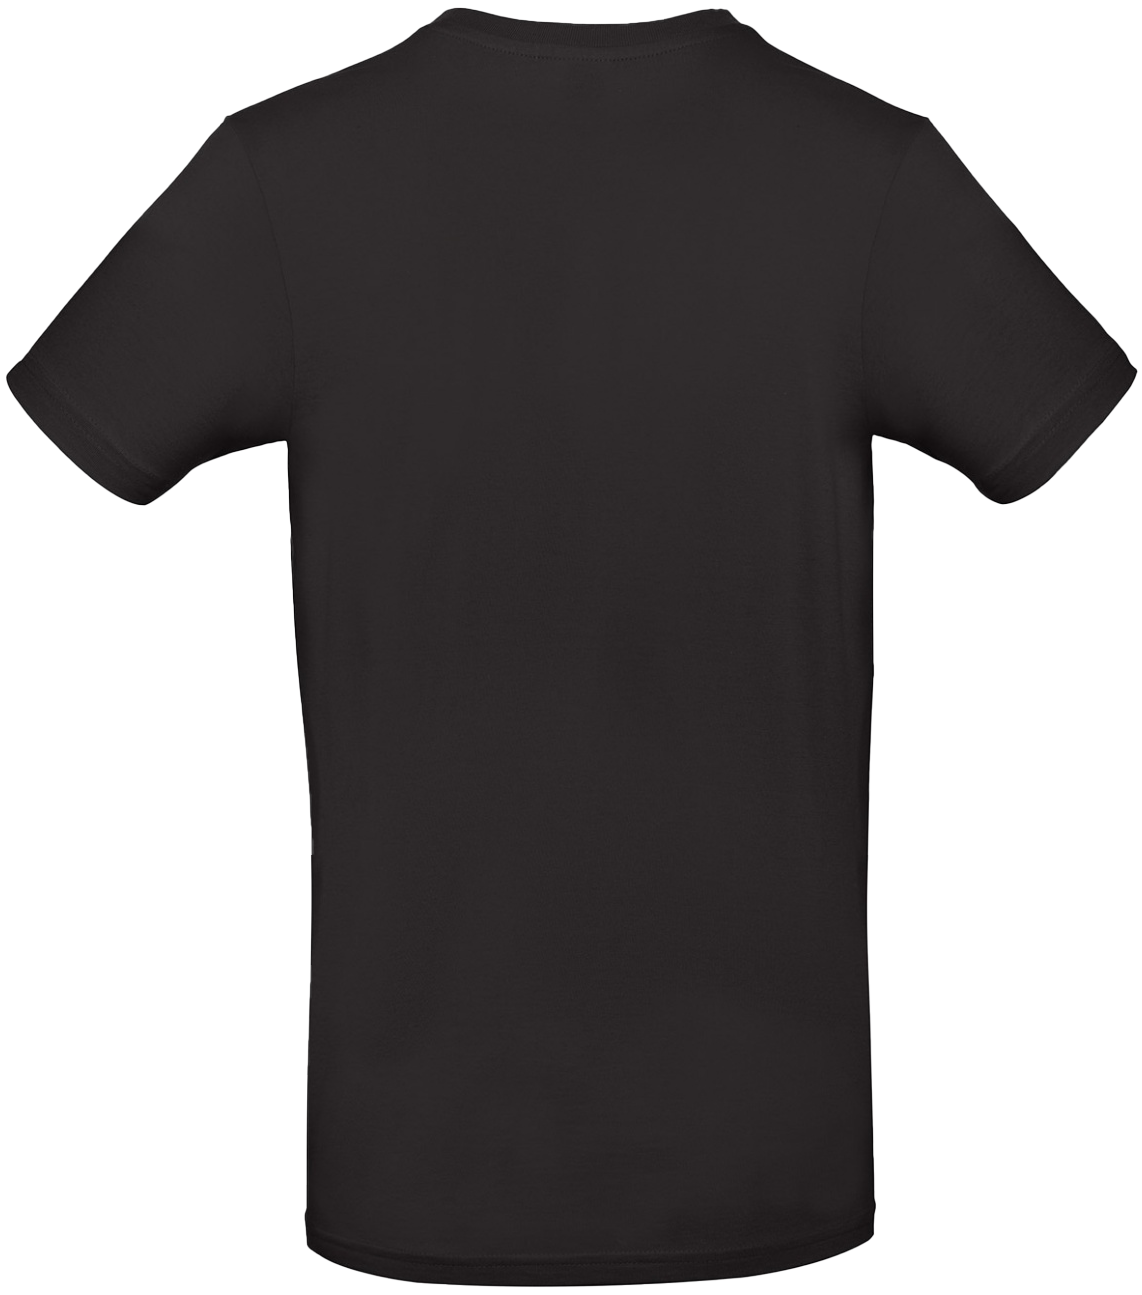 T-shirt E#190 Svart 54